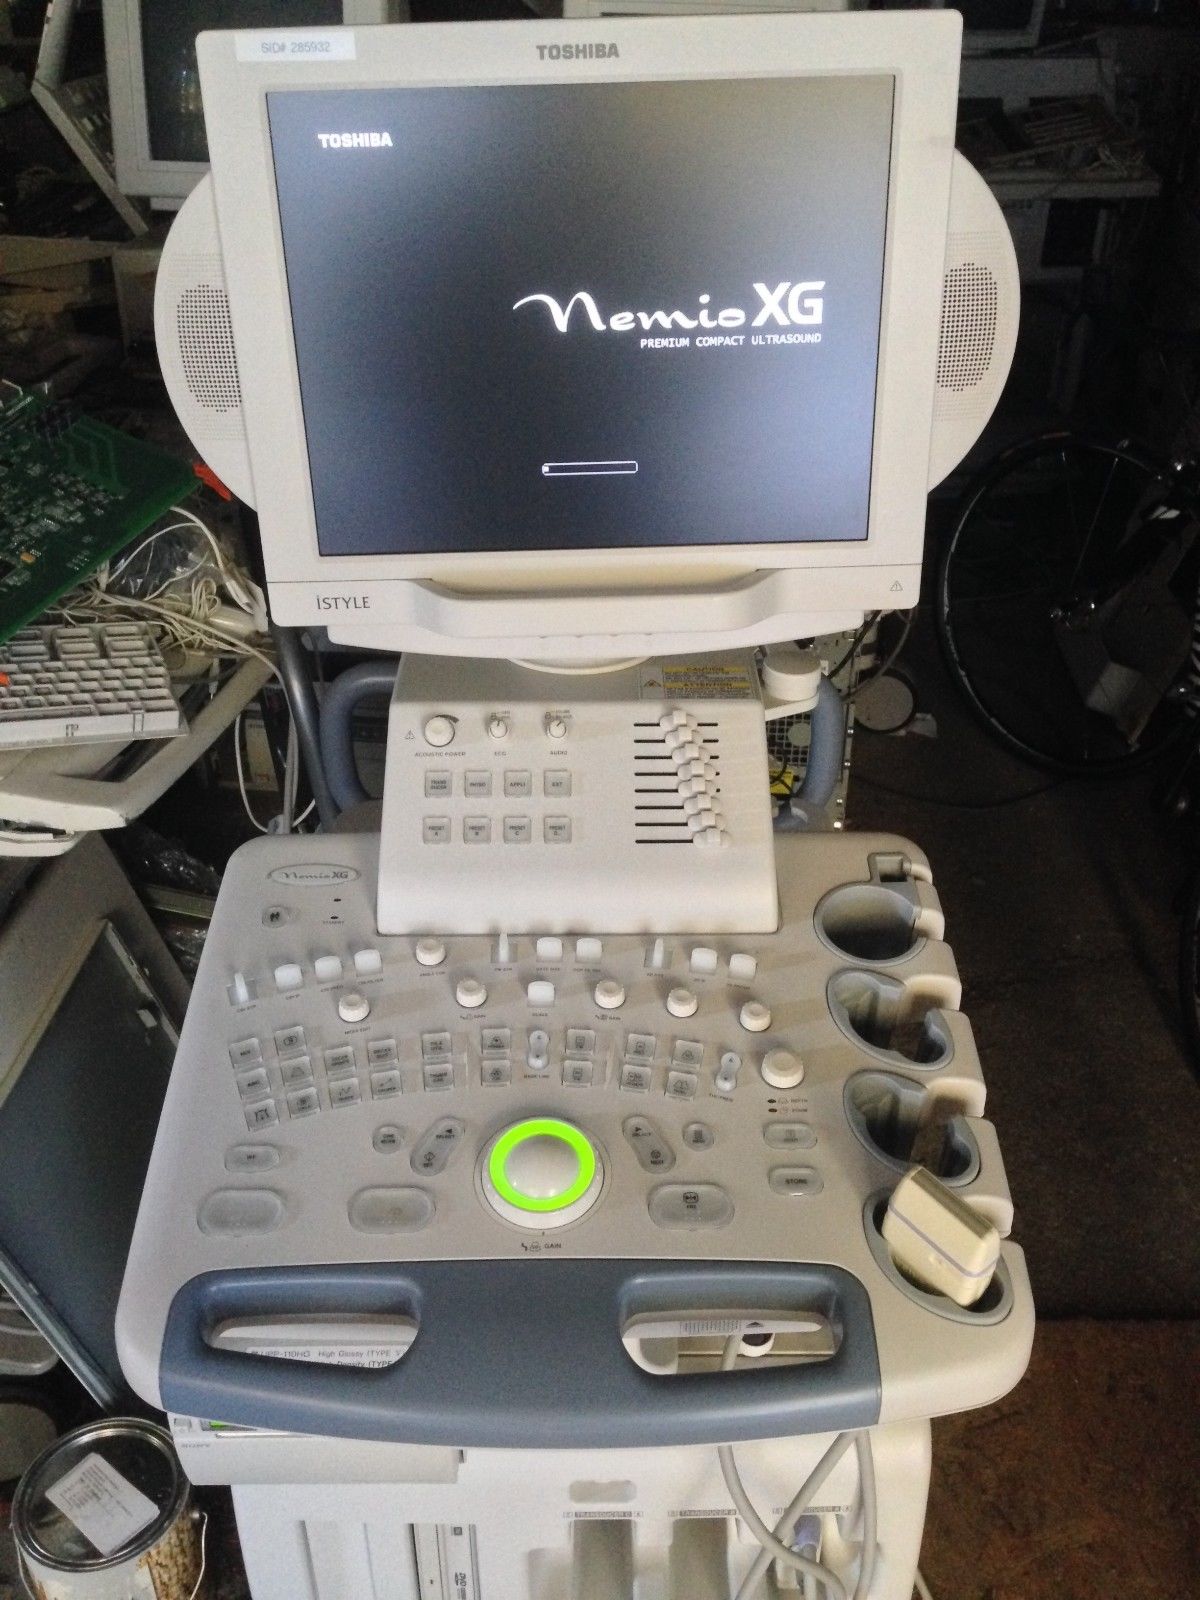 Toshiba Diagnostic Ultrasound System Nemio XG SSA-580A- Flat screen DIAGNOSTIC ULTRASOUND MACHINES FOR SALE